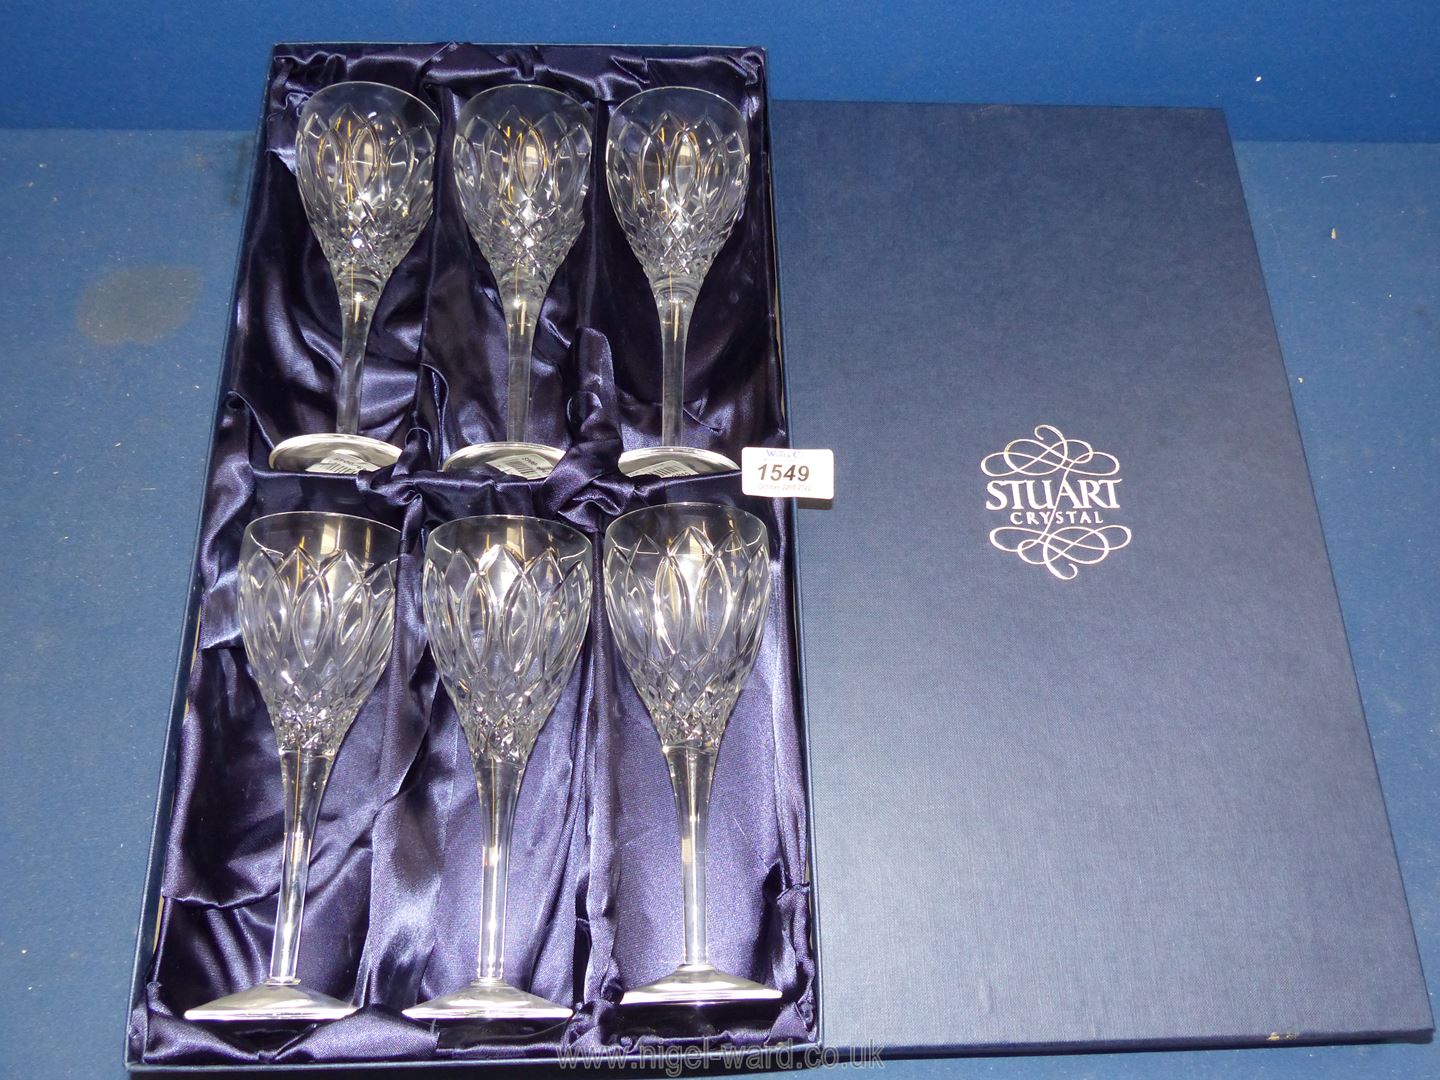 A set of six Stuart Crystal wine glasses boxed.